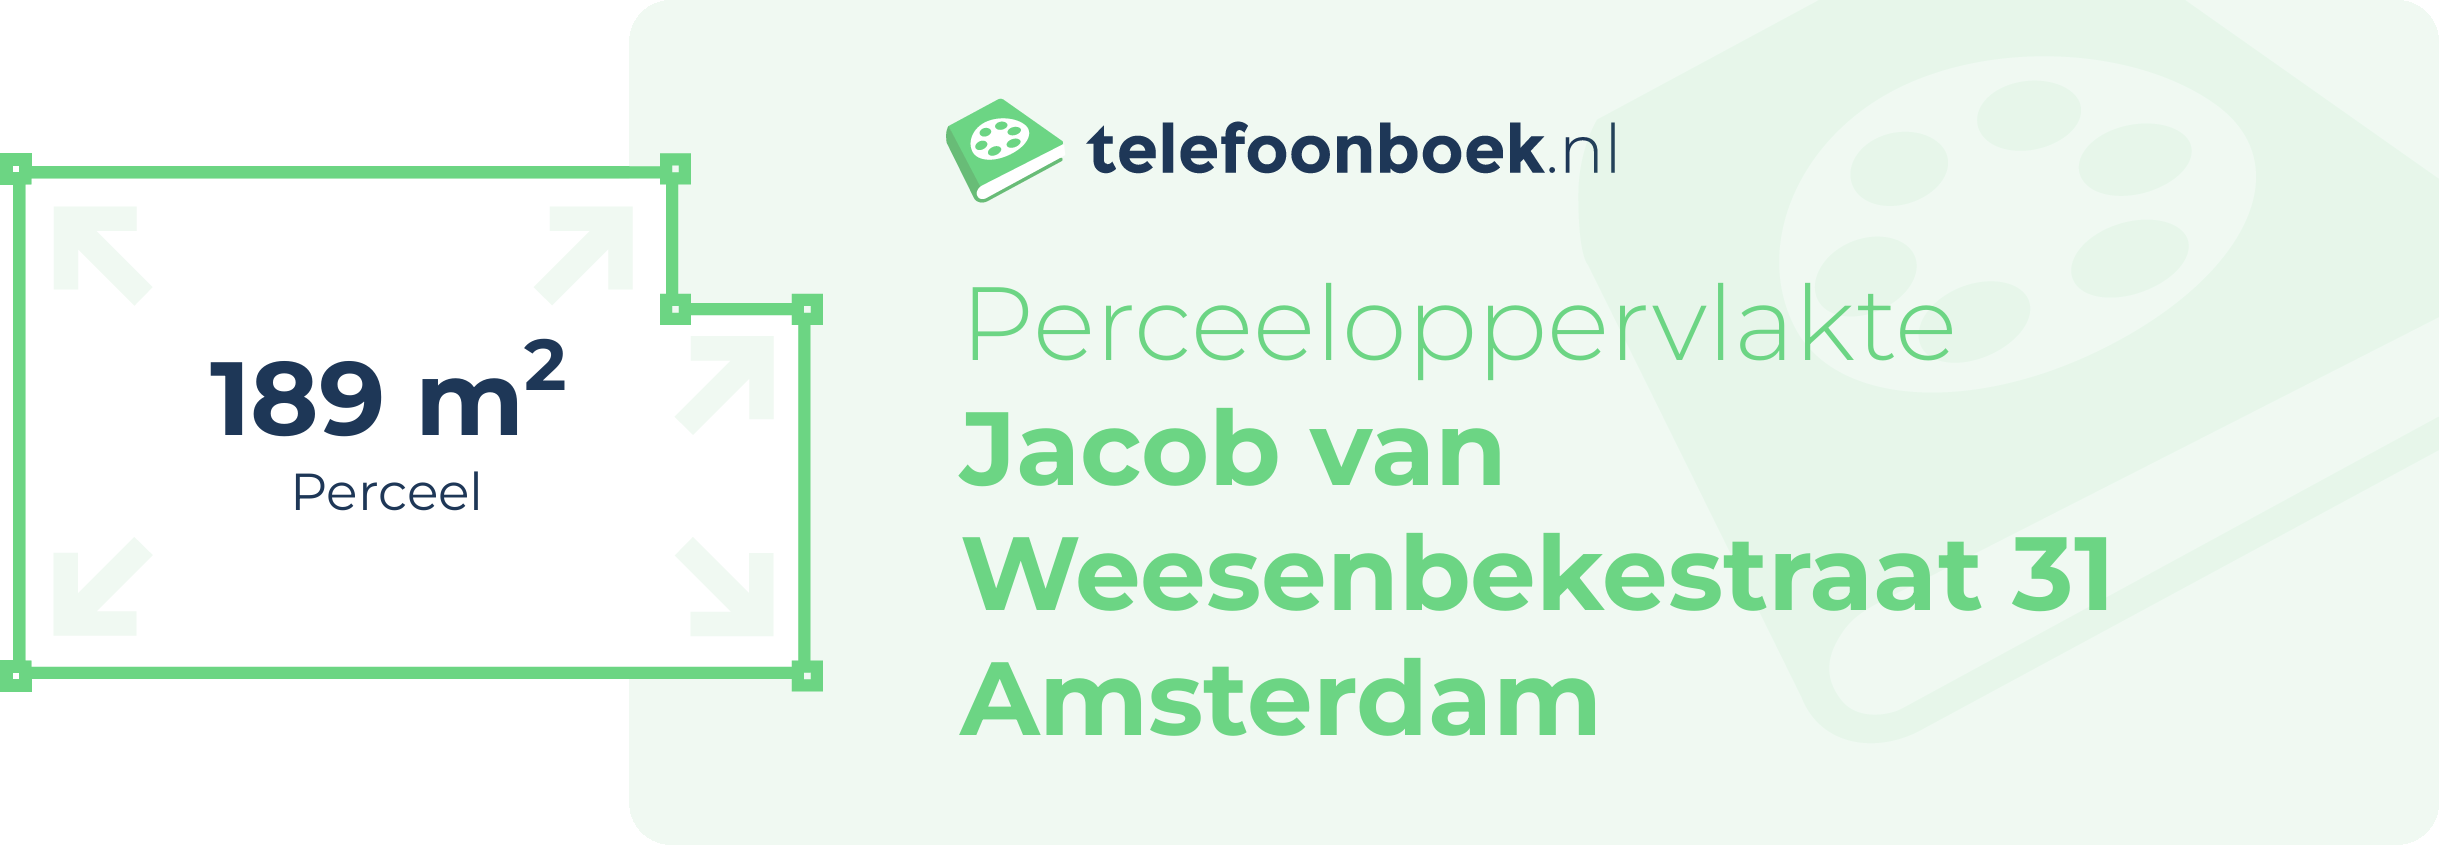 Perceeloppervlakte Jacob Van Weesenbekestraat 31 Amsterdam